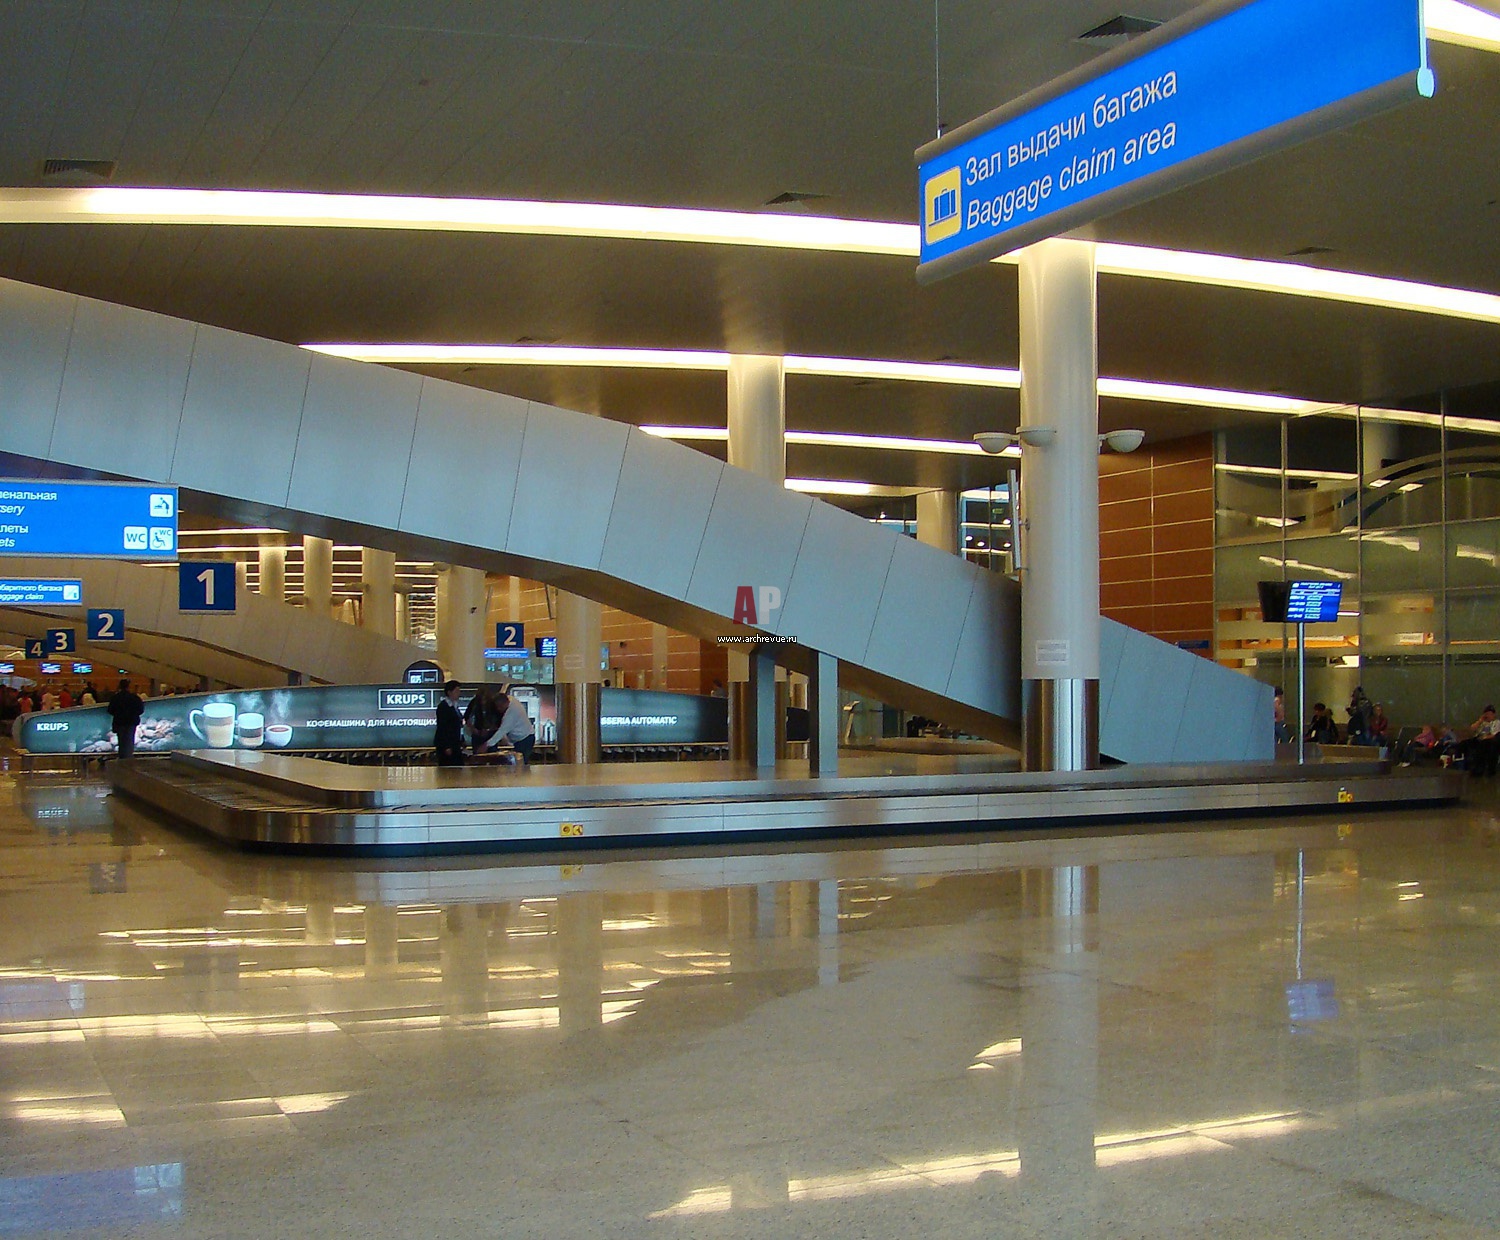 Шереметьево терминал в фото снаружи